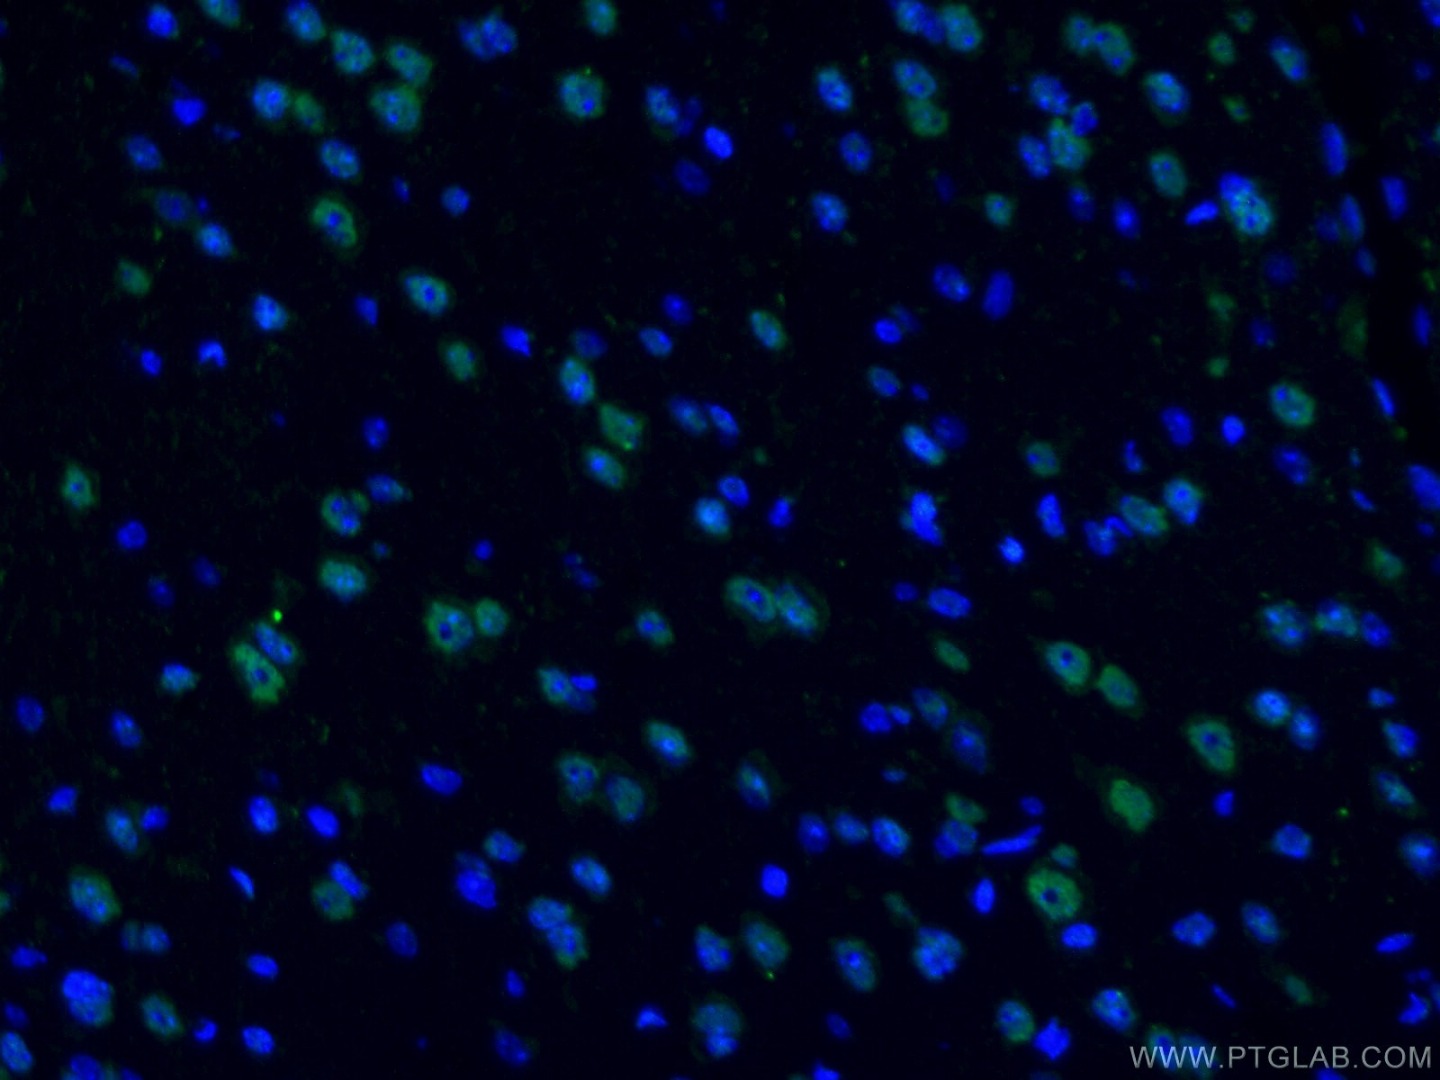 Immunofluorescent analysis of (4% PFA) fixed mouse brain tissue using TDP43/TARDBP antibody